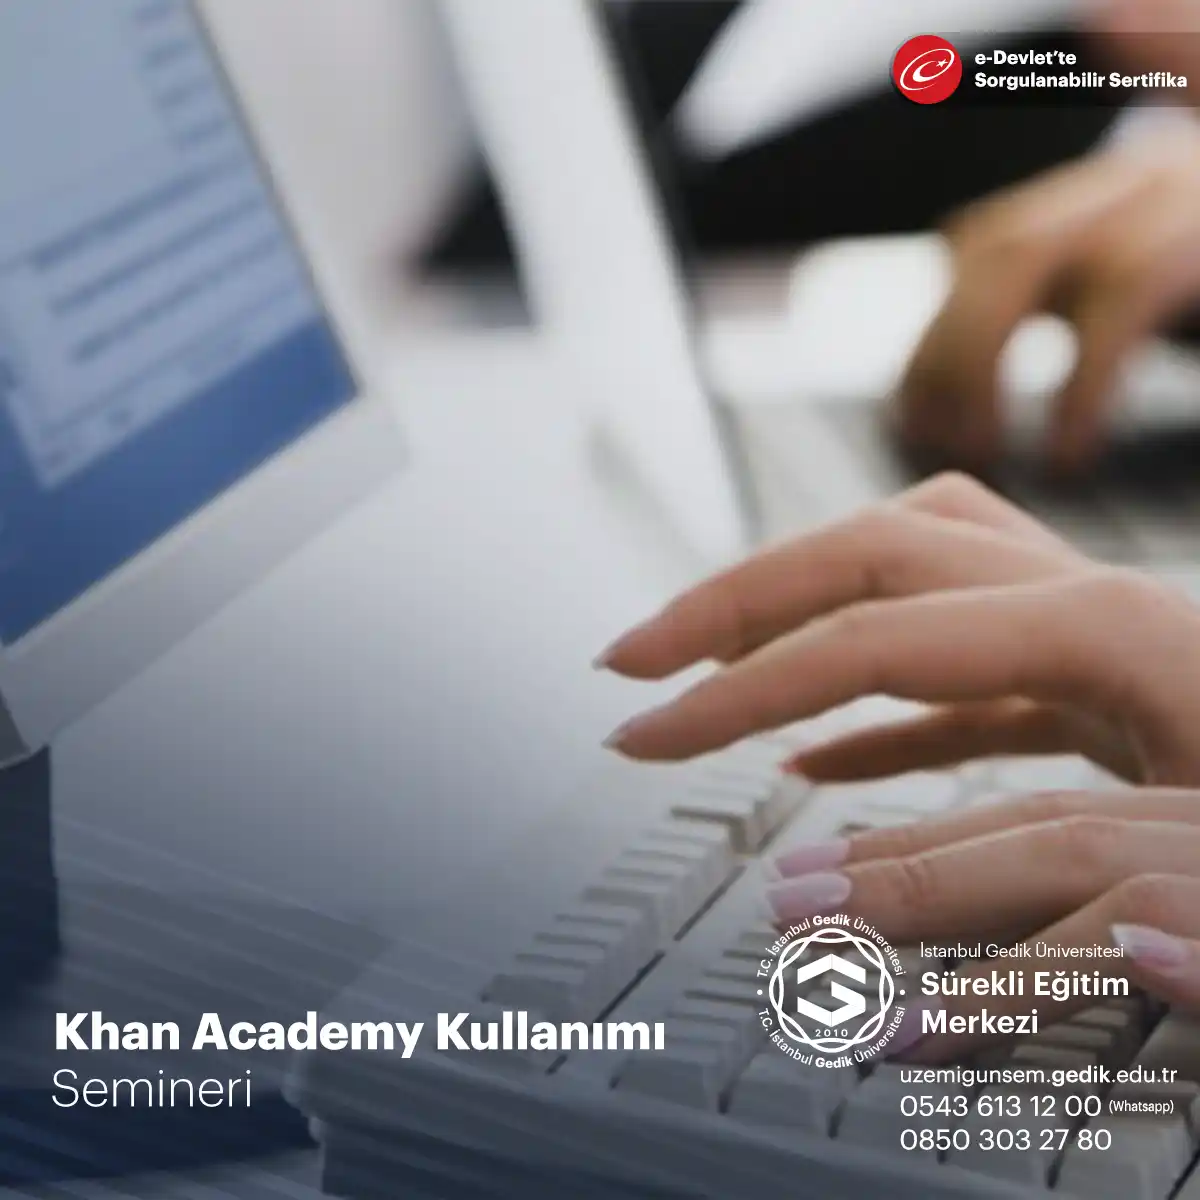 Khan Academy Kullanımı Semineri, eğitimcilerin ve öğrencilerin Khan Academy platformunu etkili bir şekilde kullanarak matematikten bilime, sanattan tarih ve daha birçok konuda öğrenme deneyimlerini zenginleştirmelerini sağlayan bir eğitim etkinliğini temsil eder.